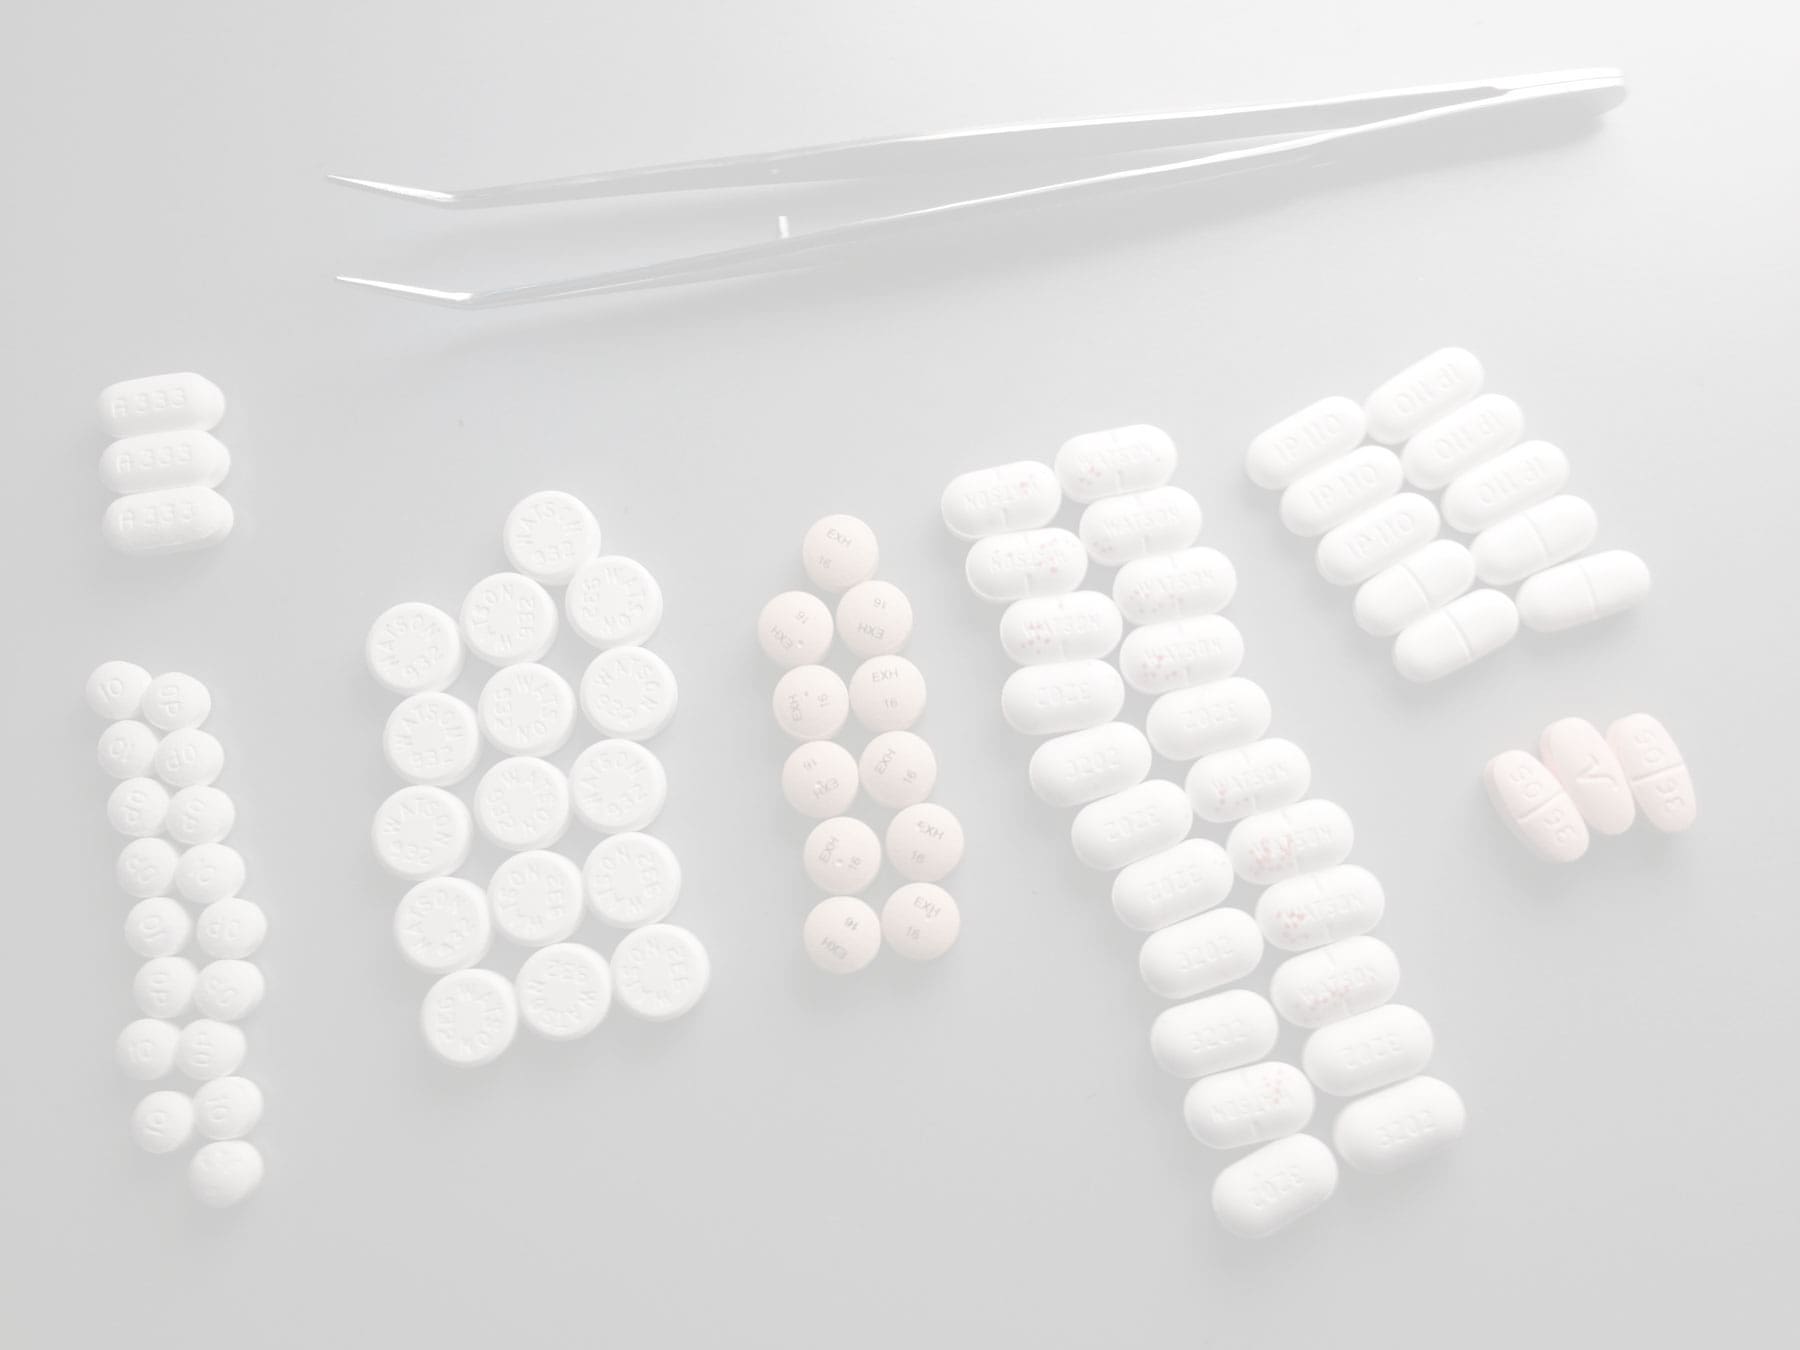 petite pince avec différentes types de pilules pour illustrer comment fonctionne une pharmacie